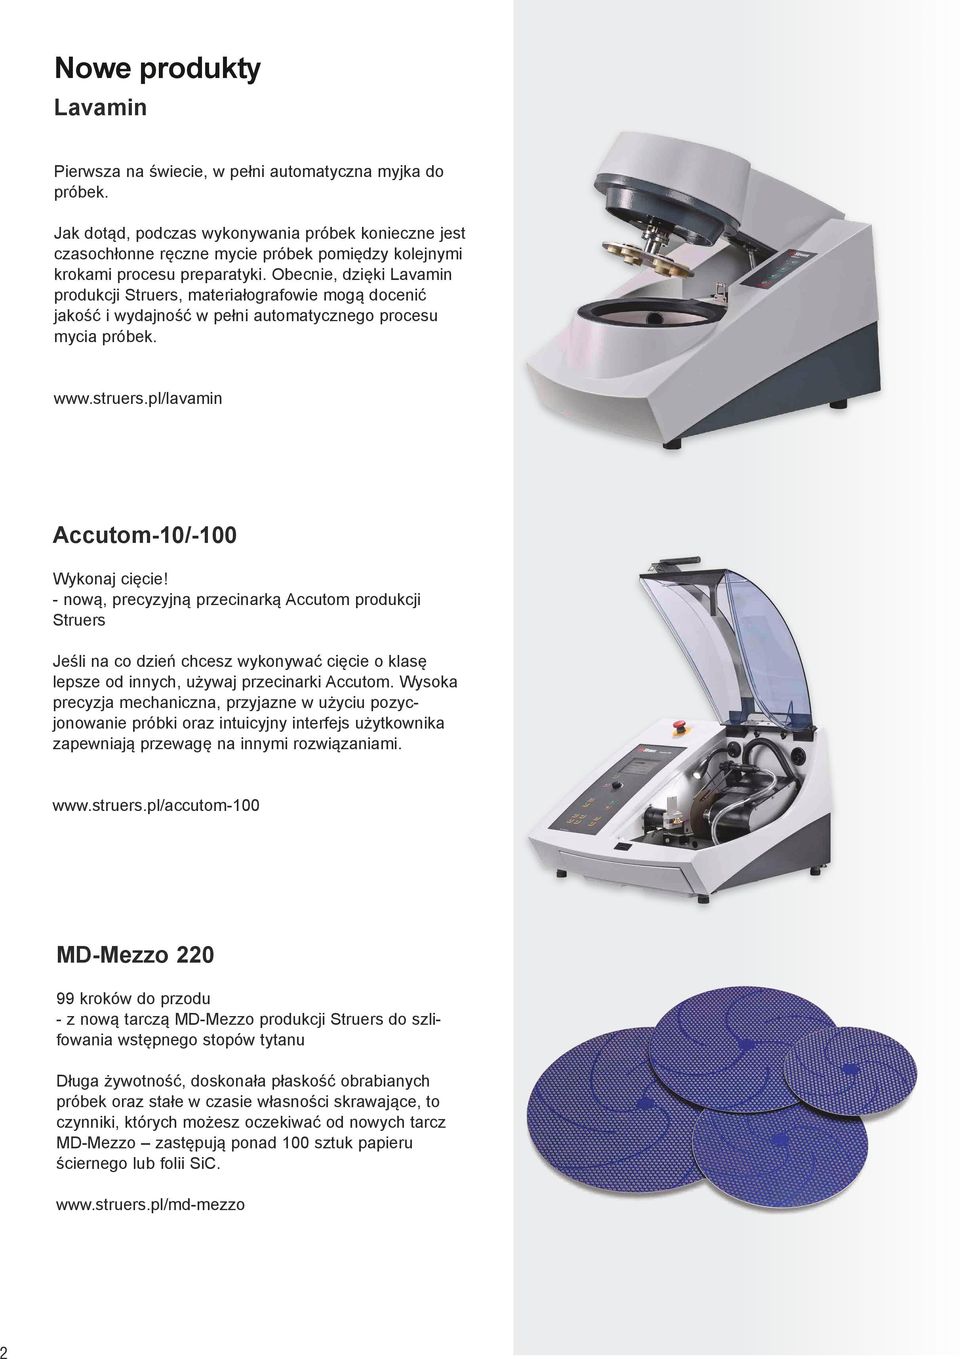 Obecnie, dzięki Lavamin produkcji Struers, materiałografowie mogą docenić jakość i wydajność w pełni automatycznego procesu mycia próbek. www.struers.pl/lavamin Accutom-10/-100 Wykonaj cięcie!